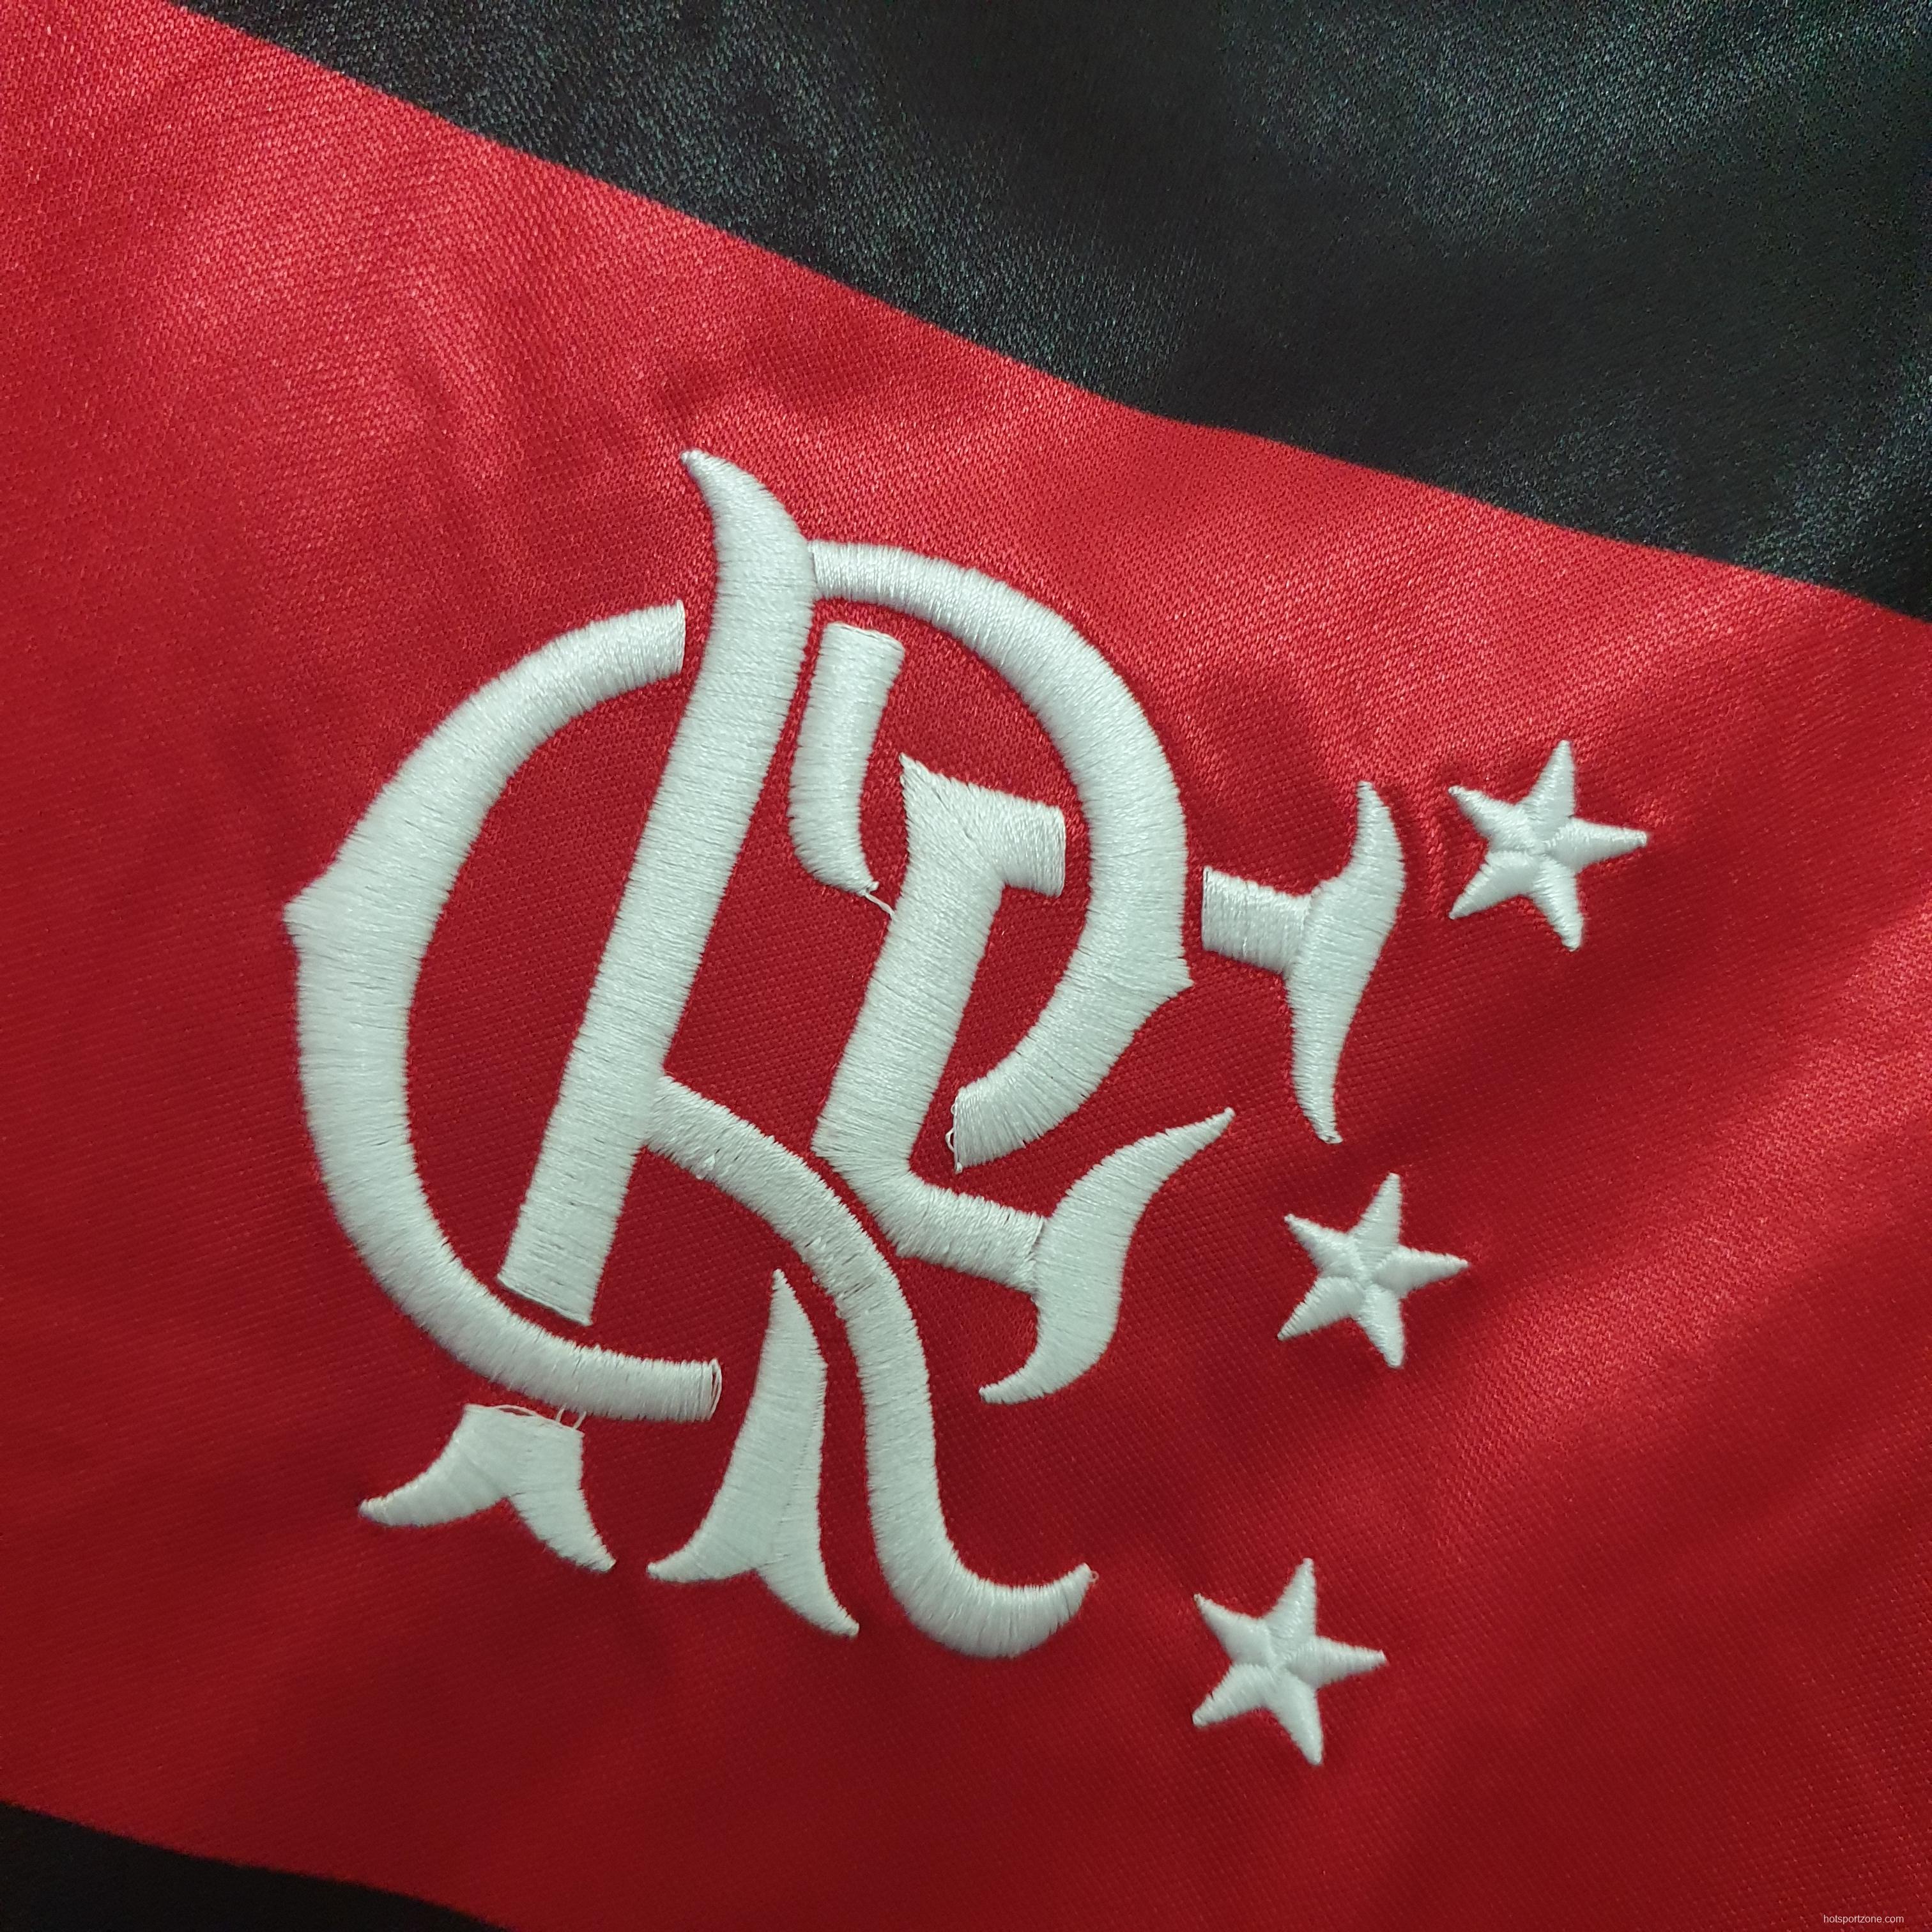 Flamengo 1990 retro shirt home Soccer Jersey